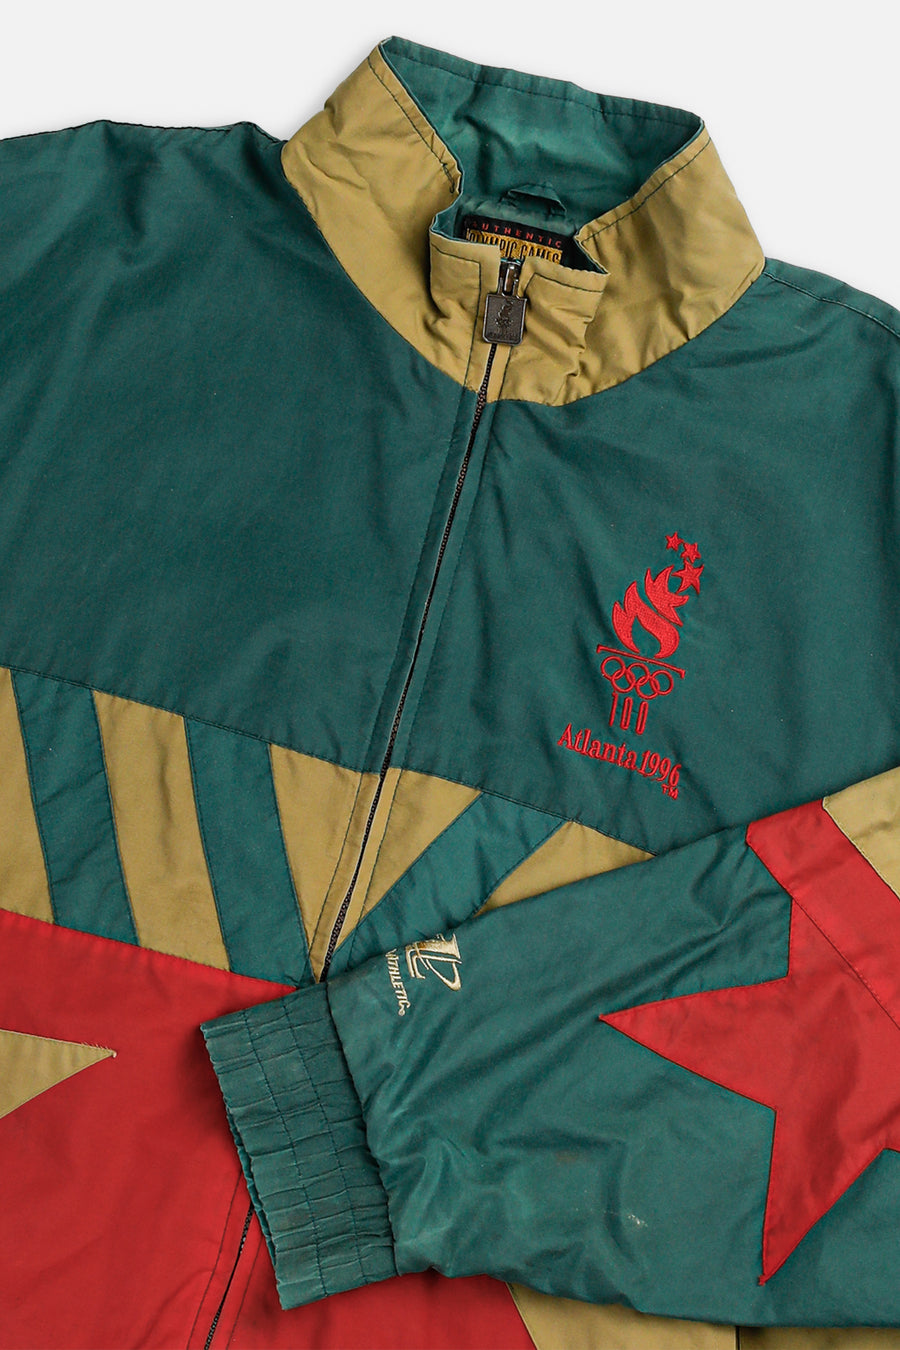 Vintage Olympics 1996 Windbreaker Jacket - XL